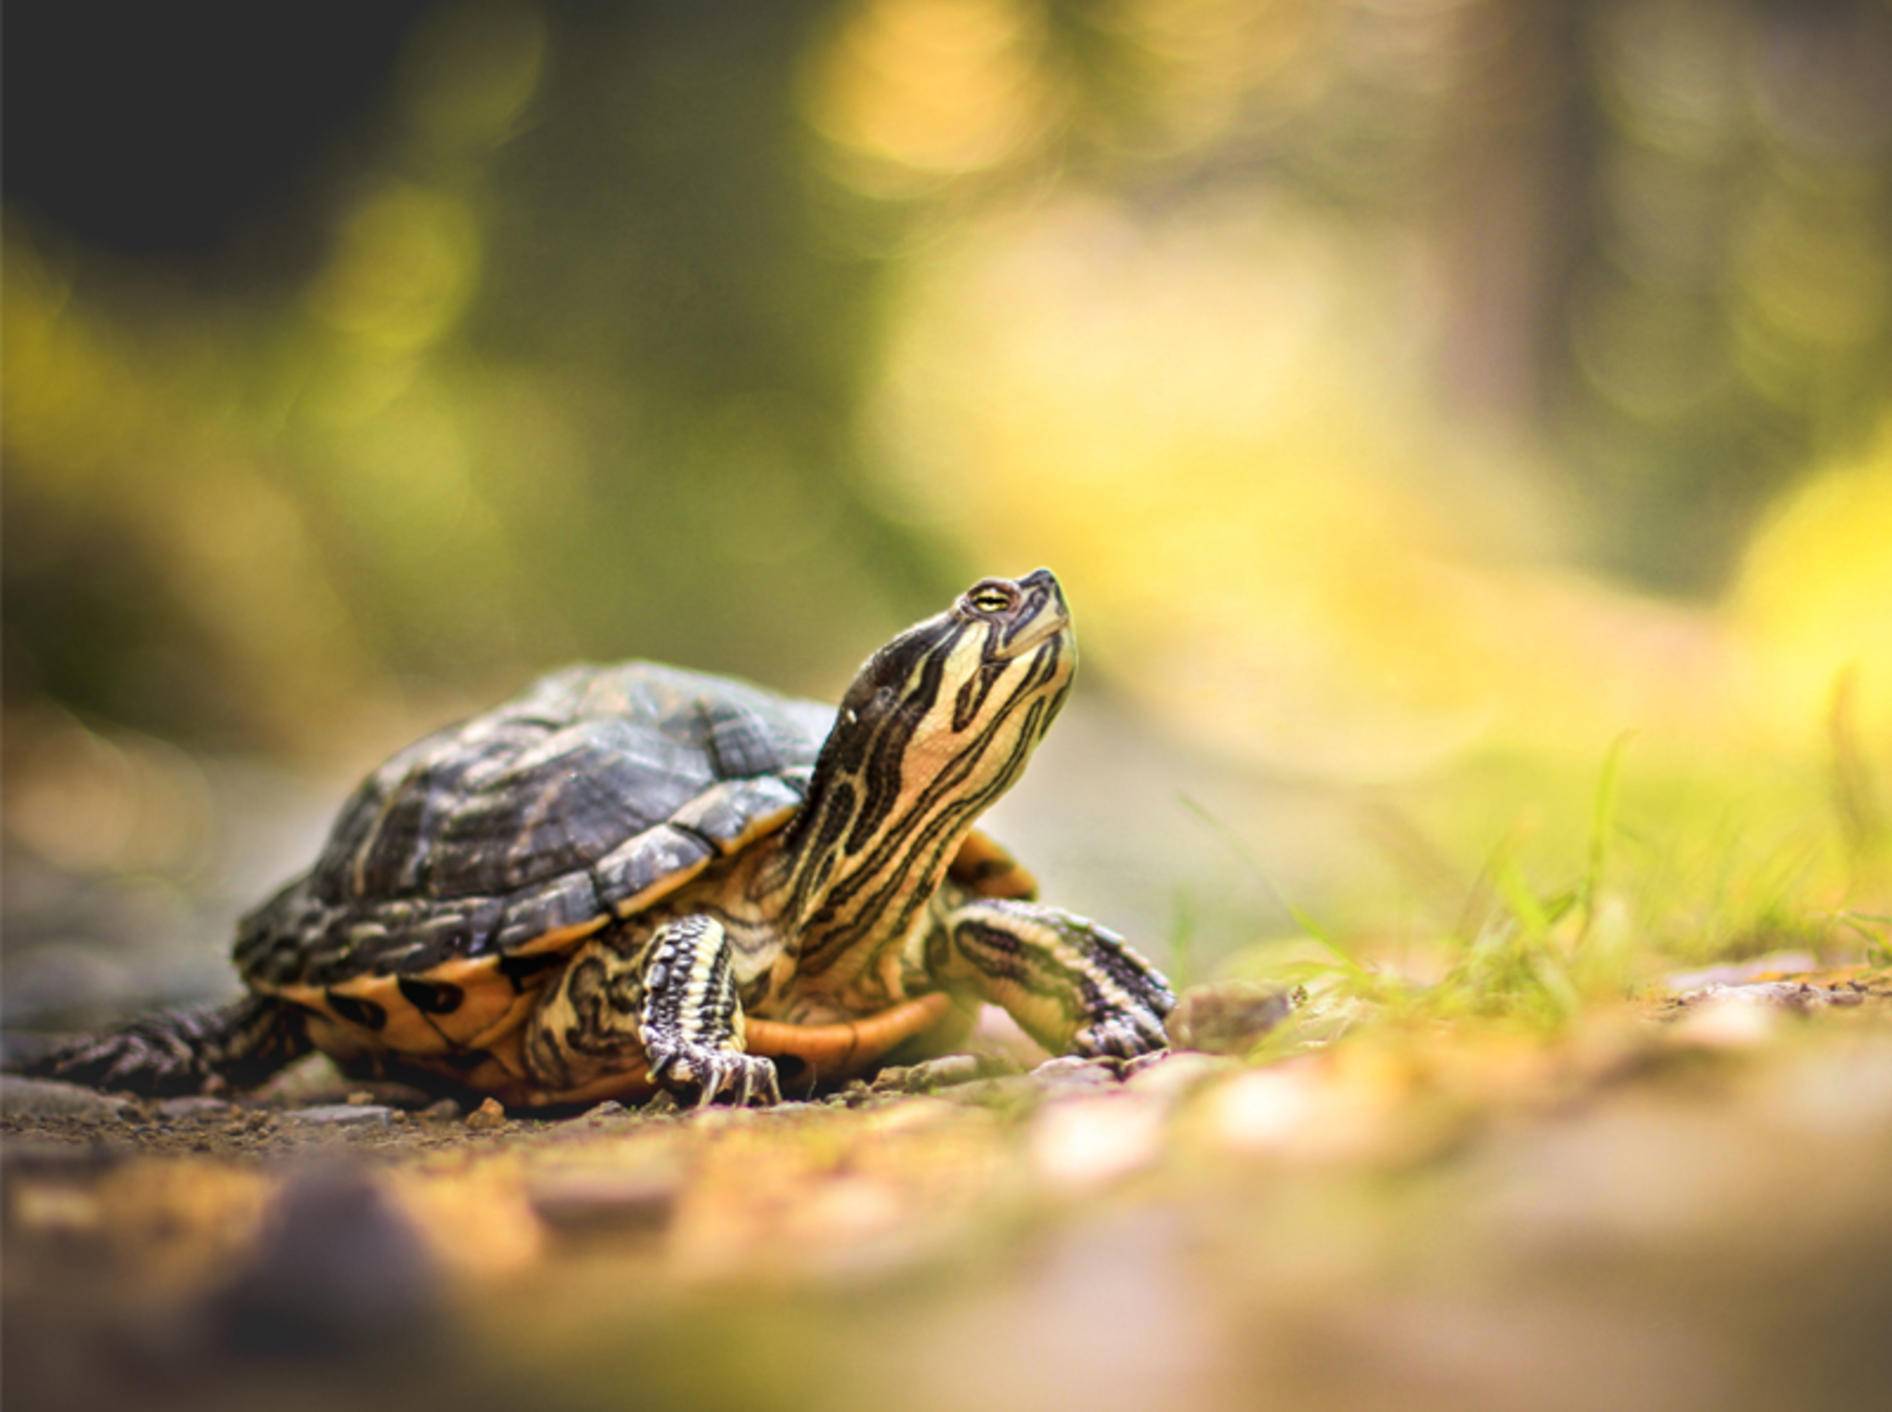 Wie hält man Schildkröten artgerecht? - Bild: Shutterstock / Nicinka Studio